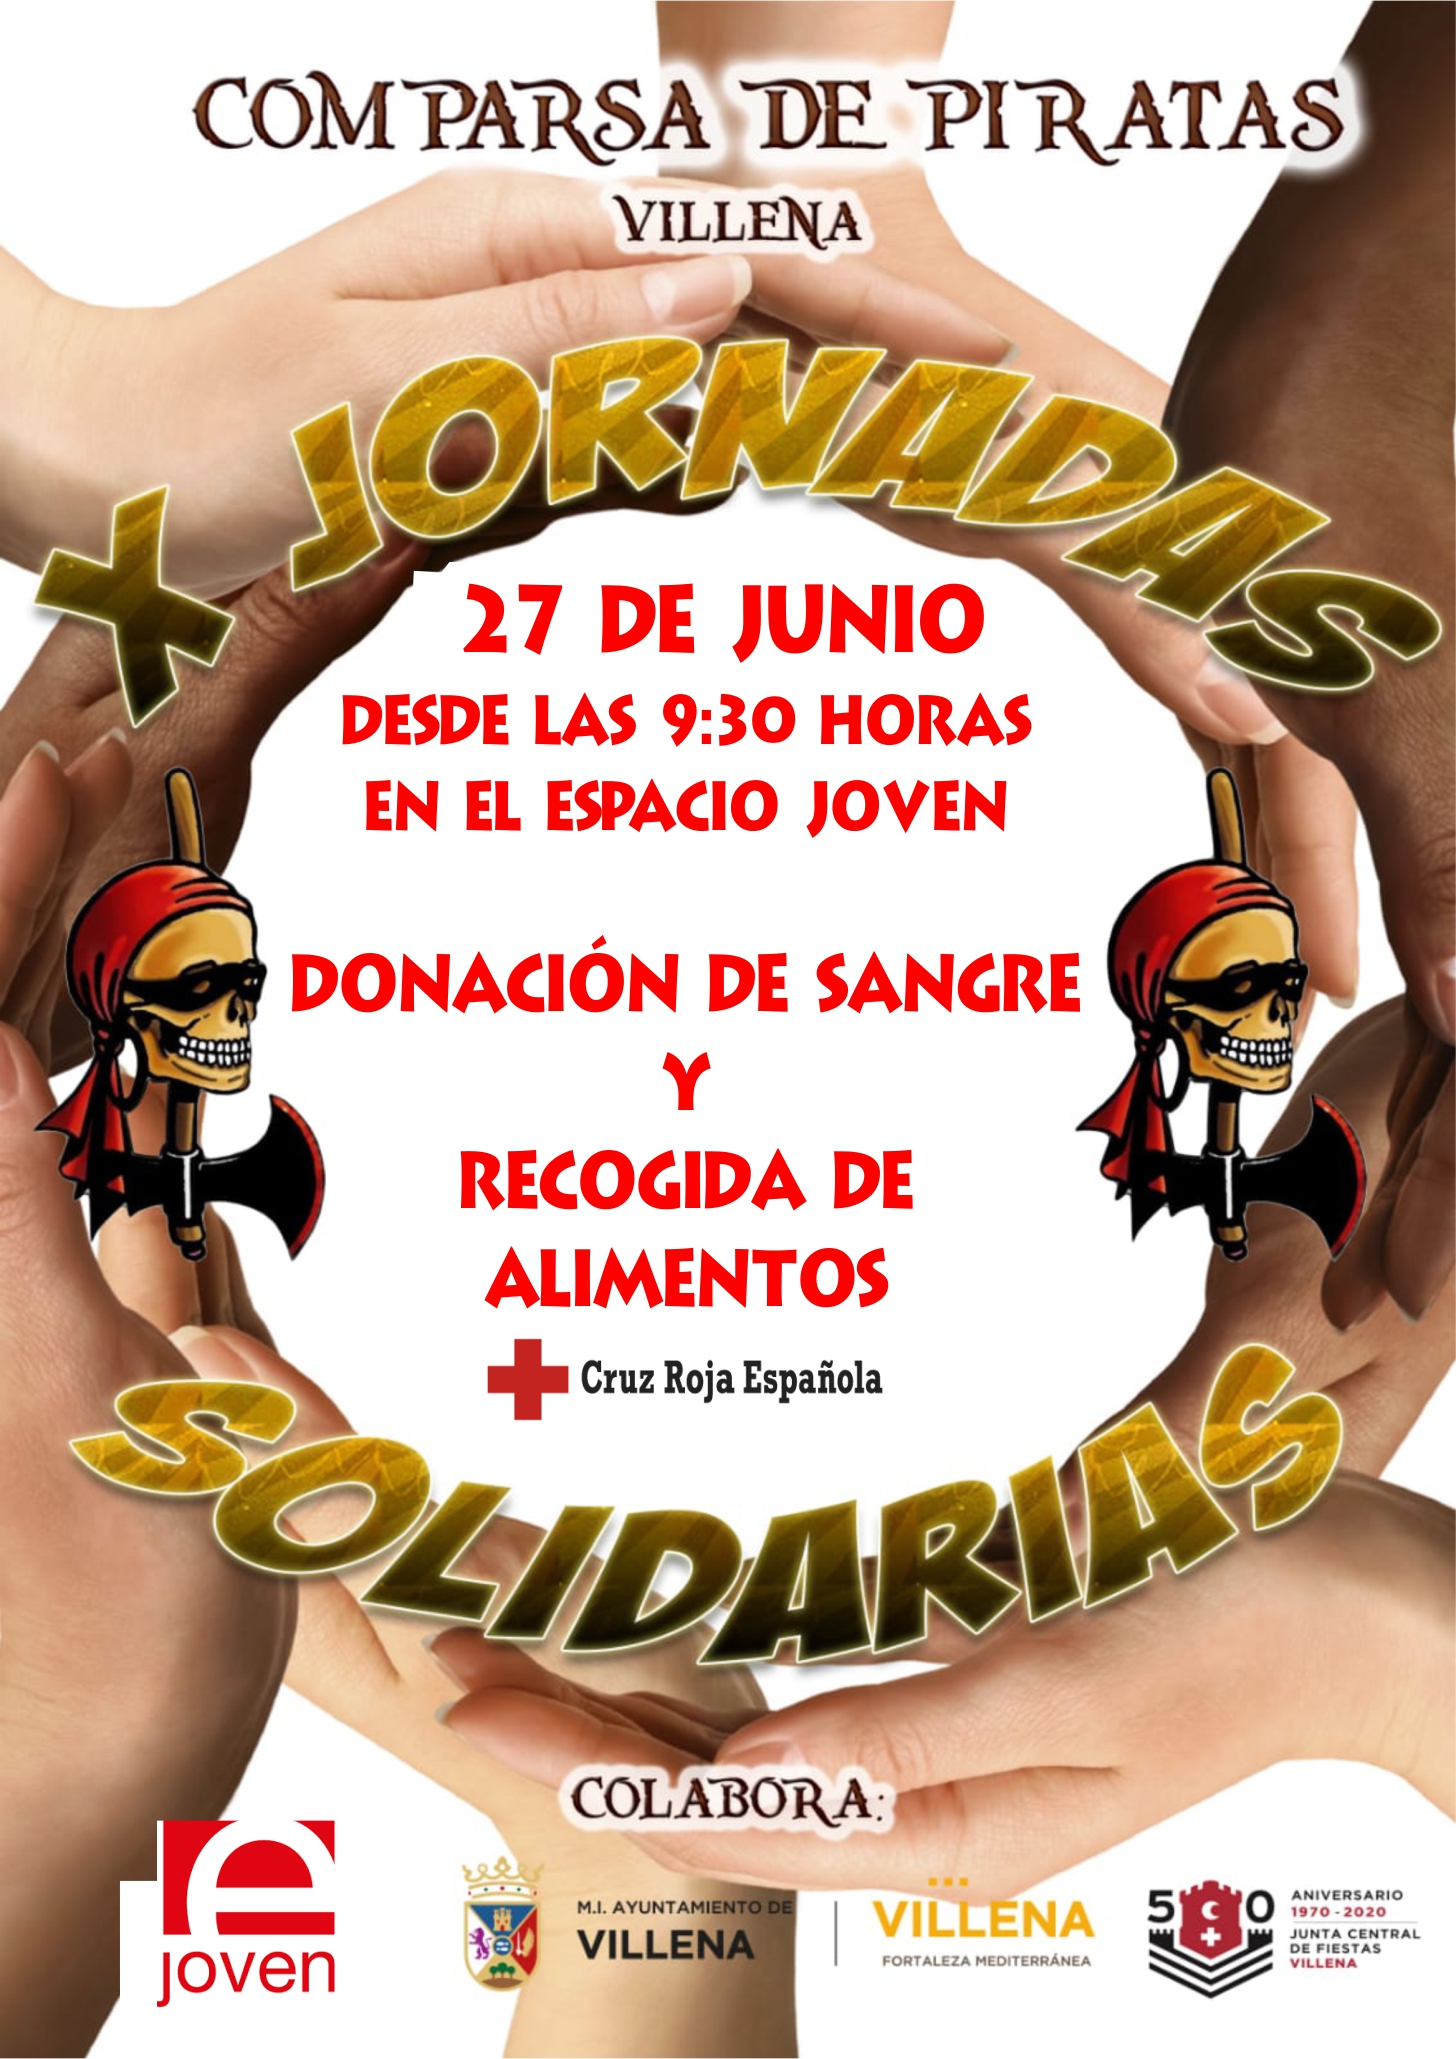 La comparsa de Piratas retoma las XI Jornadas Solidarias el sábado 27 de junio